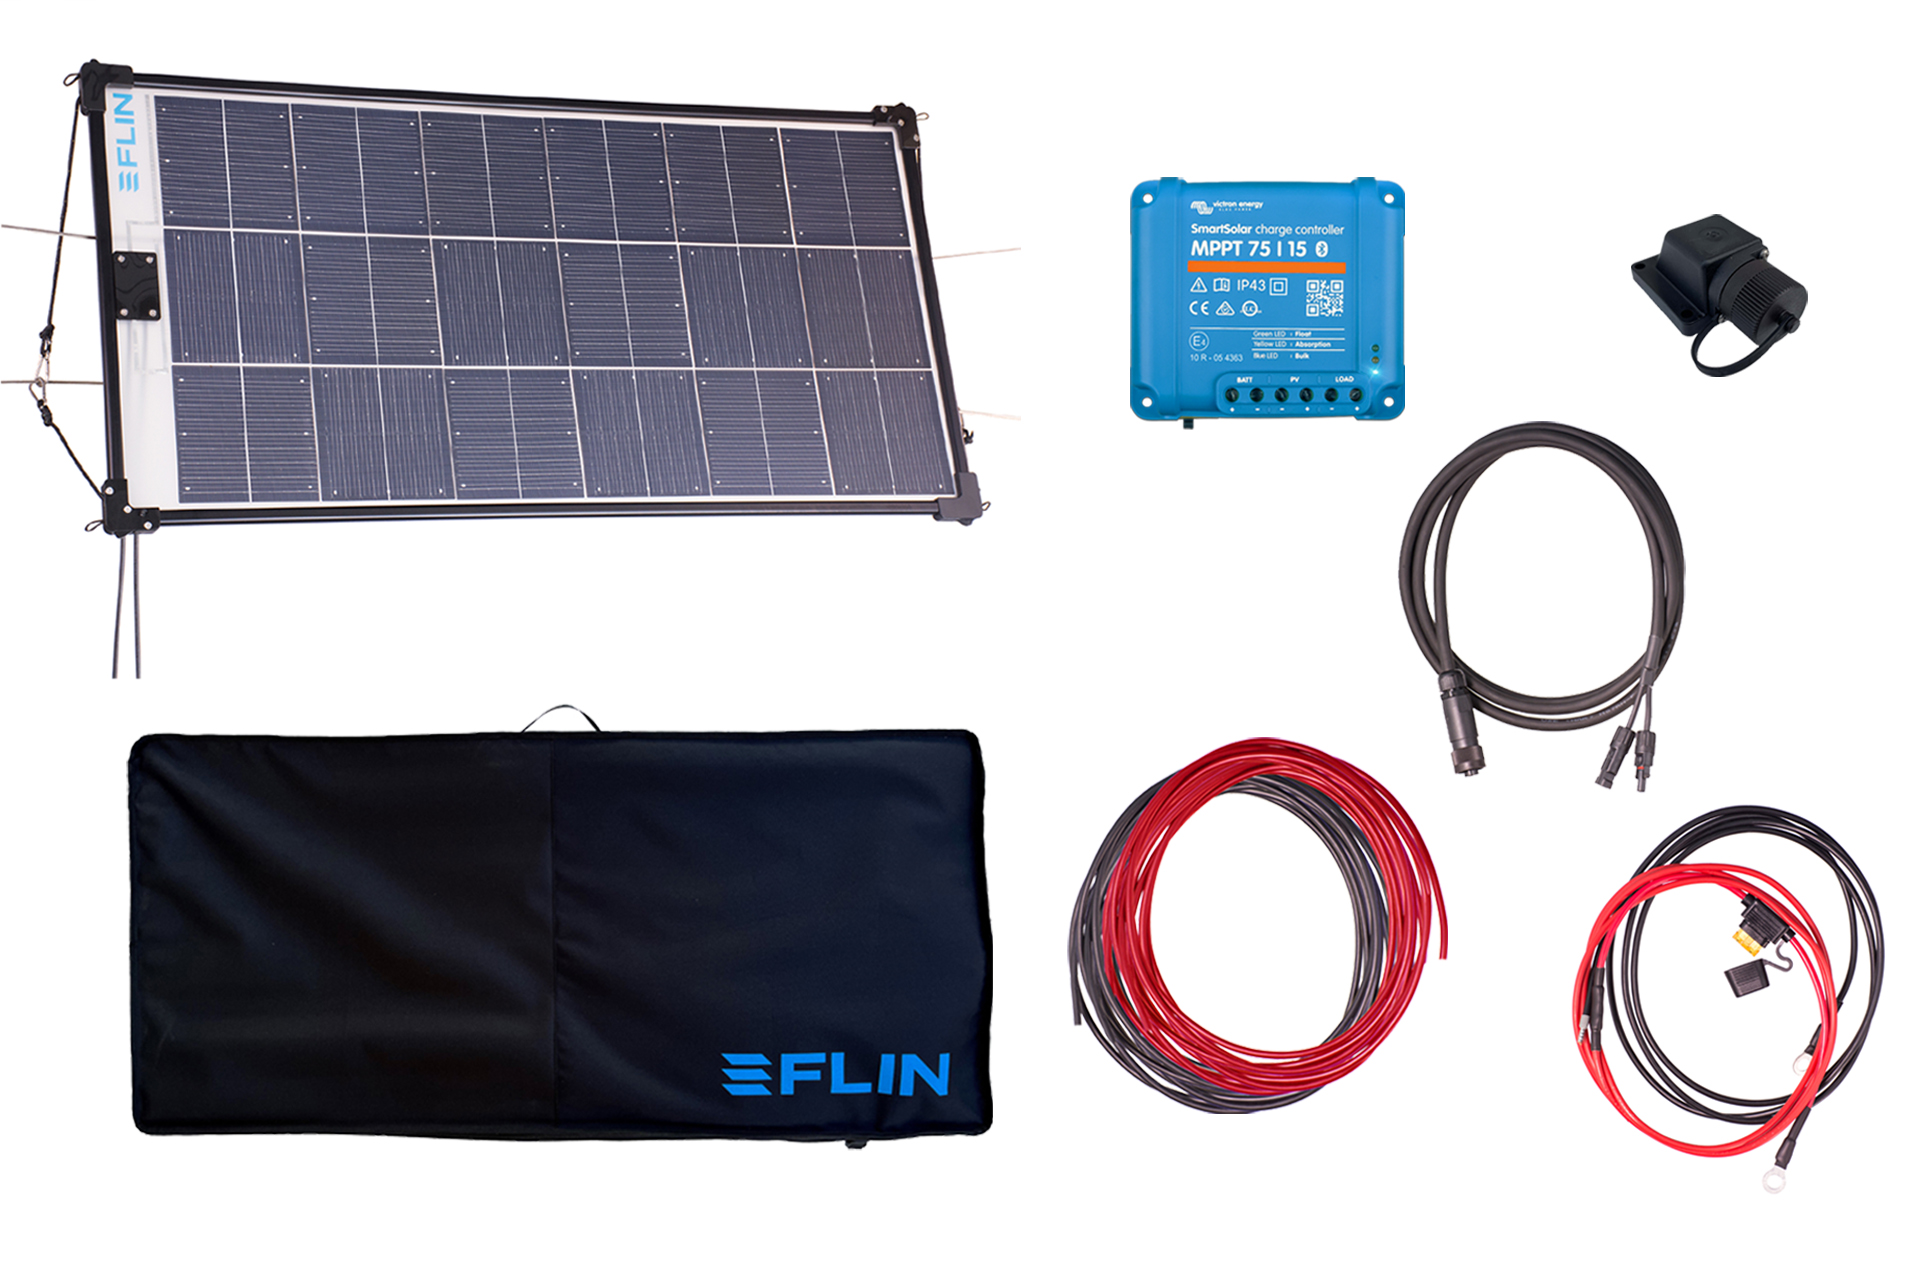 FLIN-SOLAR FLINset 1x FLINrail+